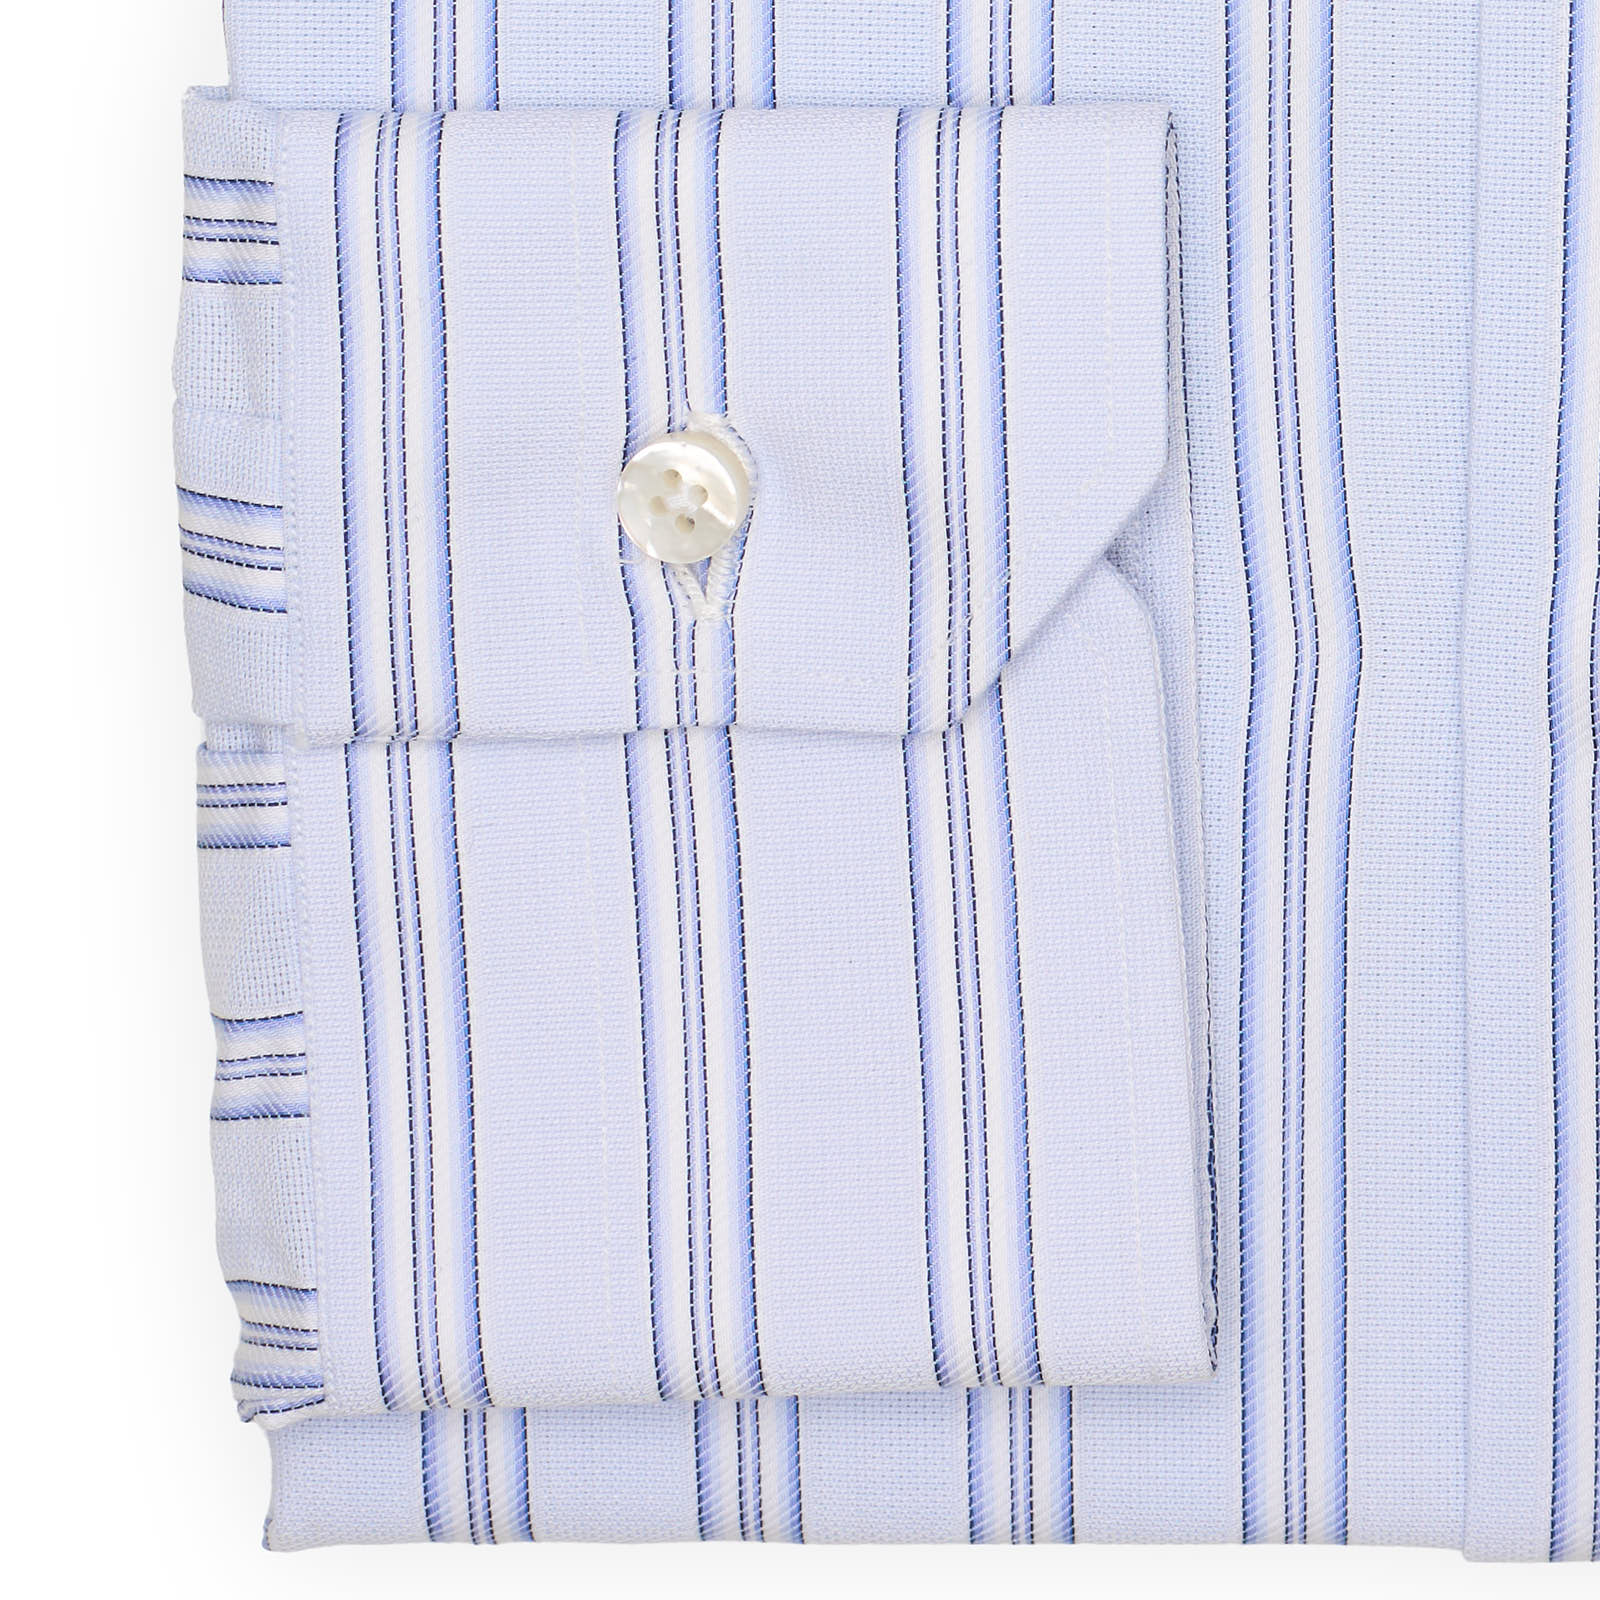 MATTABISCH for VANNUCCI Light Blue Striped Cotton Dress Shirt EU 41 US 16